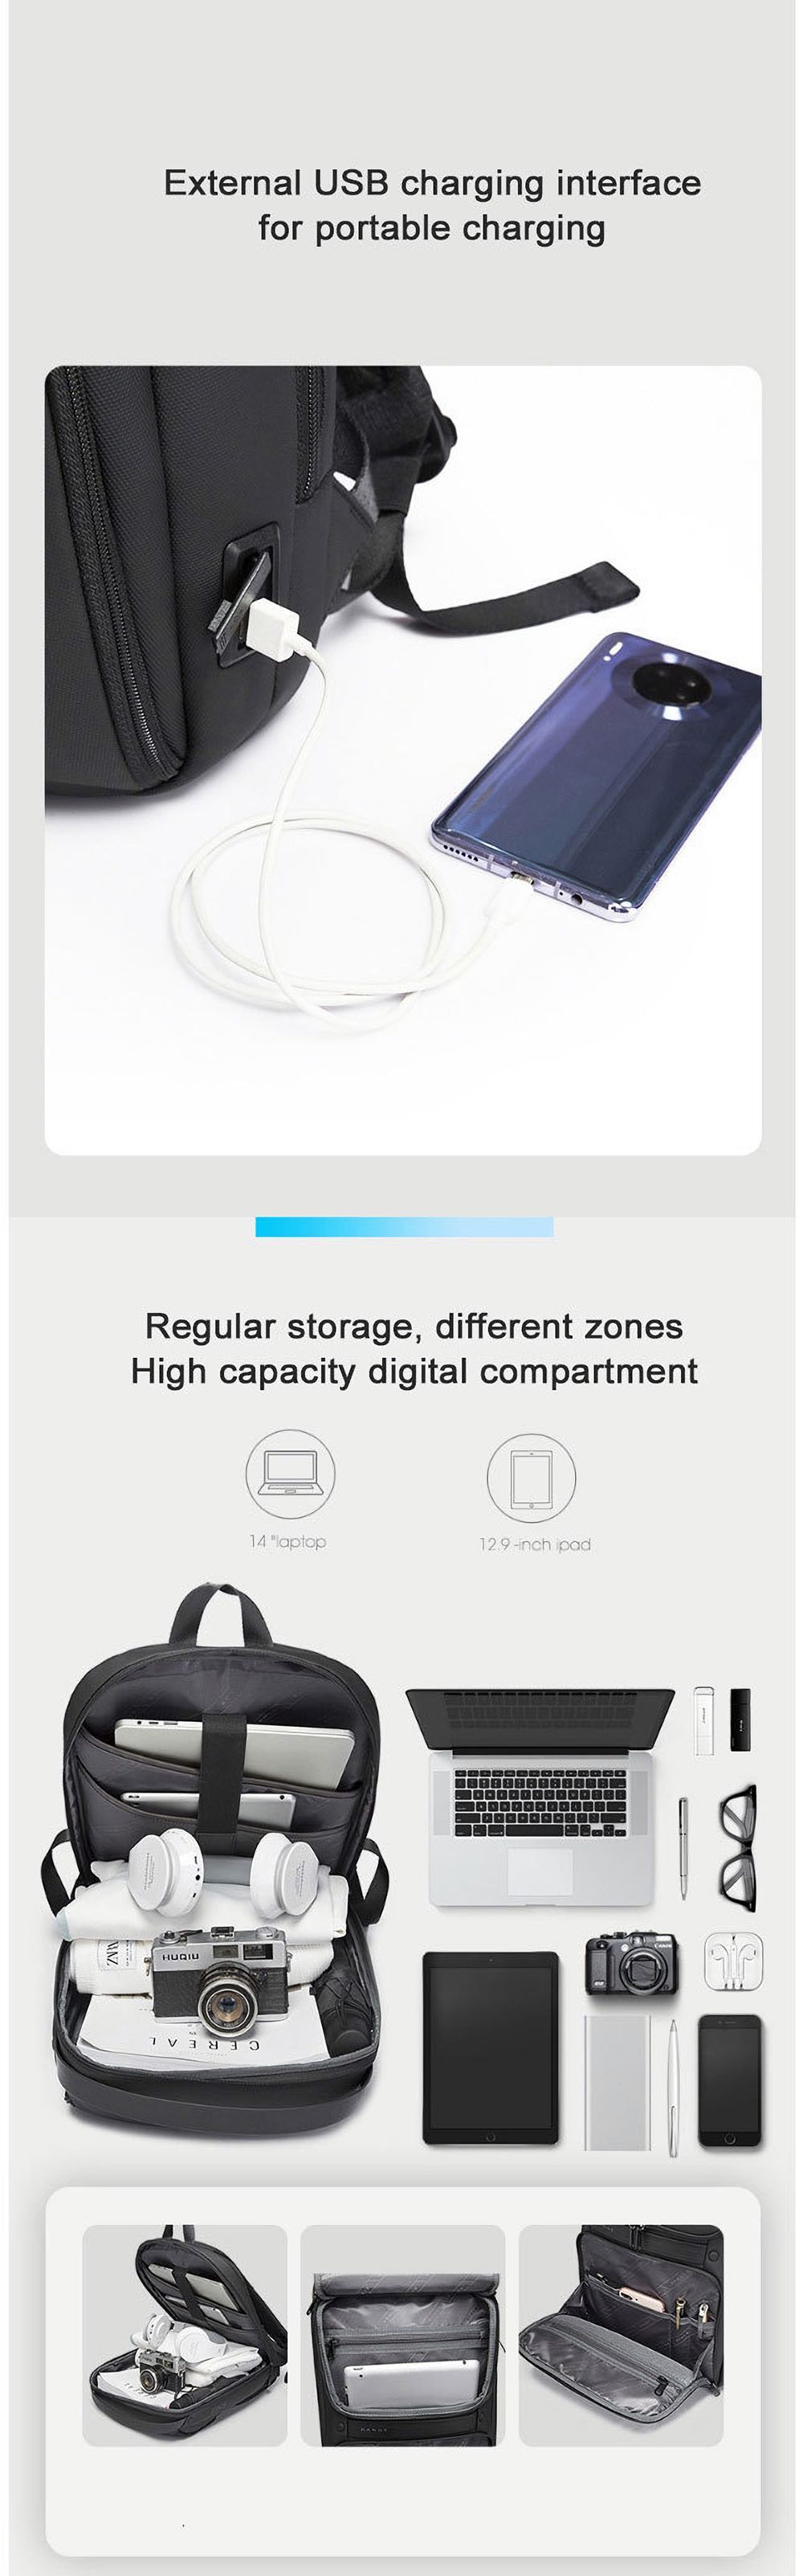 BANGE-Car-Backpack-Laptop-Bag-Shoulder-Bag-USB-Charging-Men-Business-Travel-Storage-Bag-for-156-inch-1766225